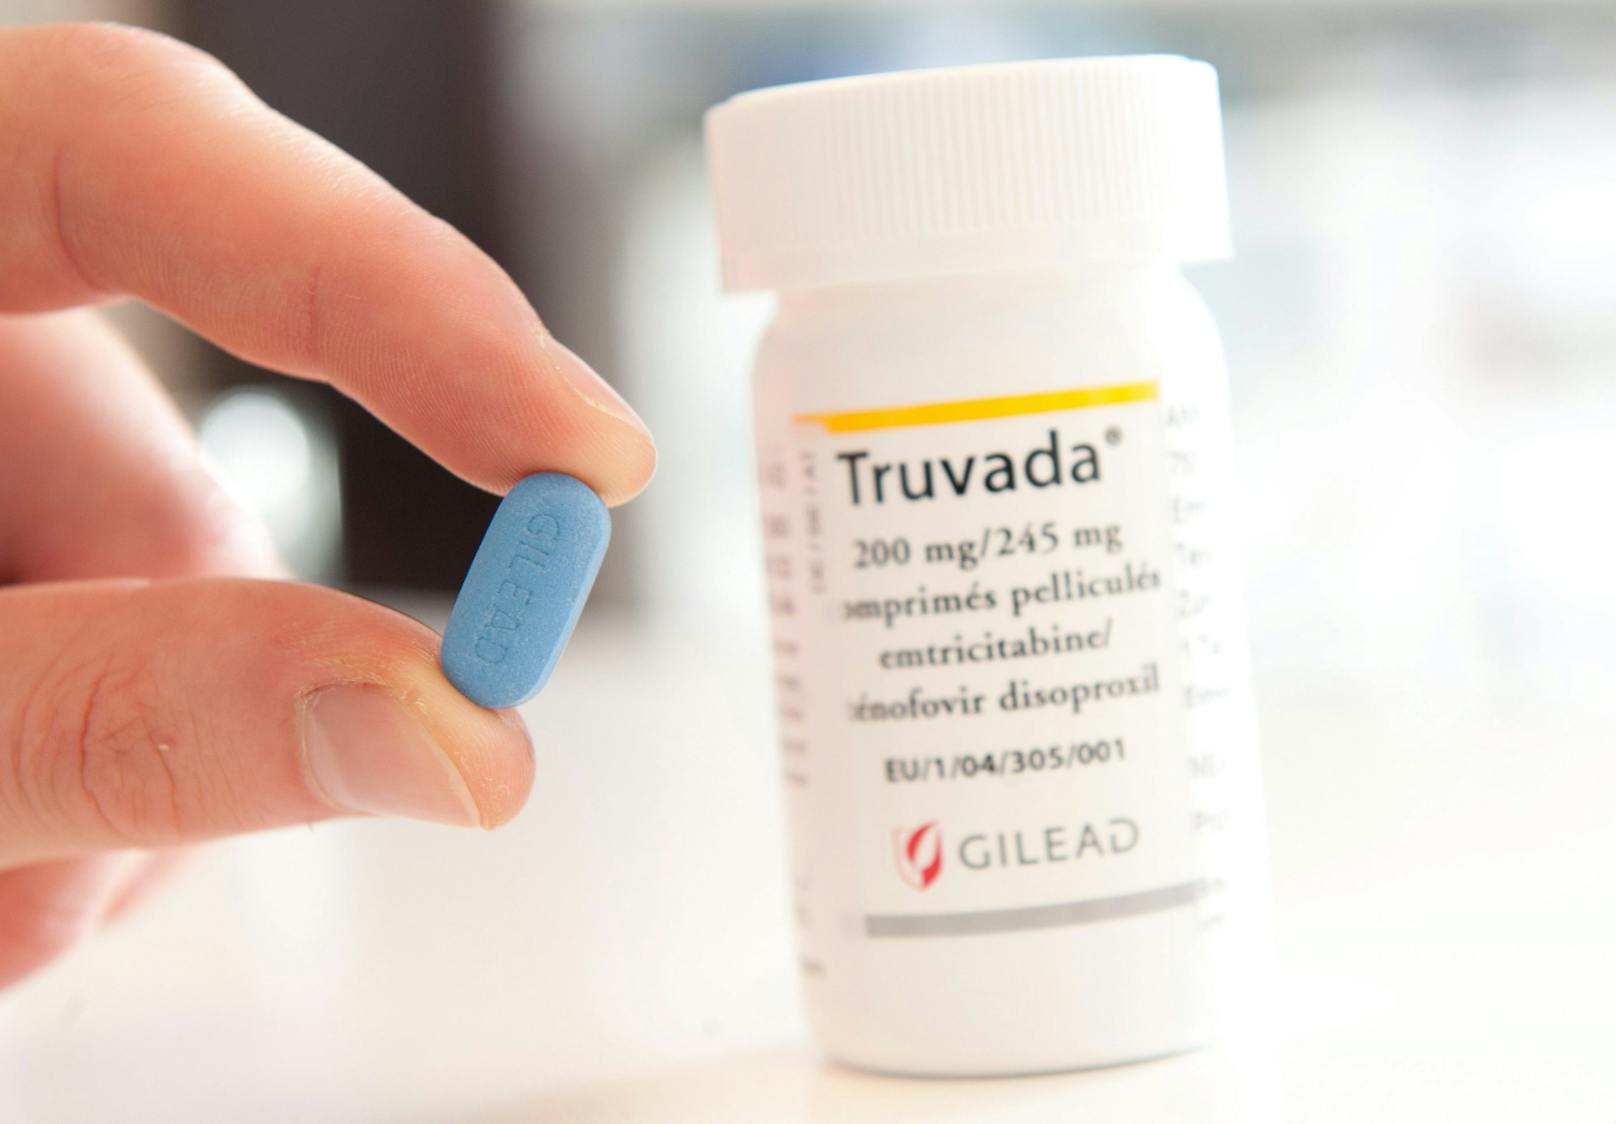 Truvada (Bild) wird zur HIV-Prophylaxe auf Privatrezept verschrieben.&nbsp;